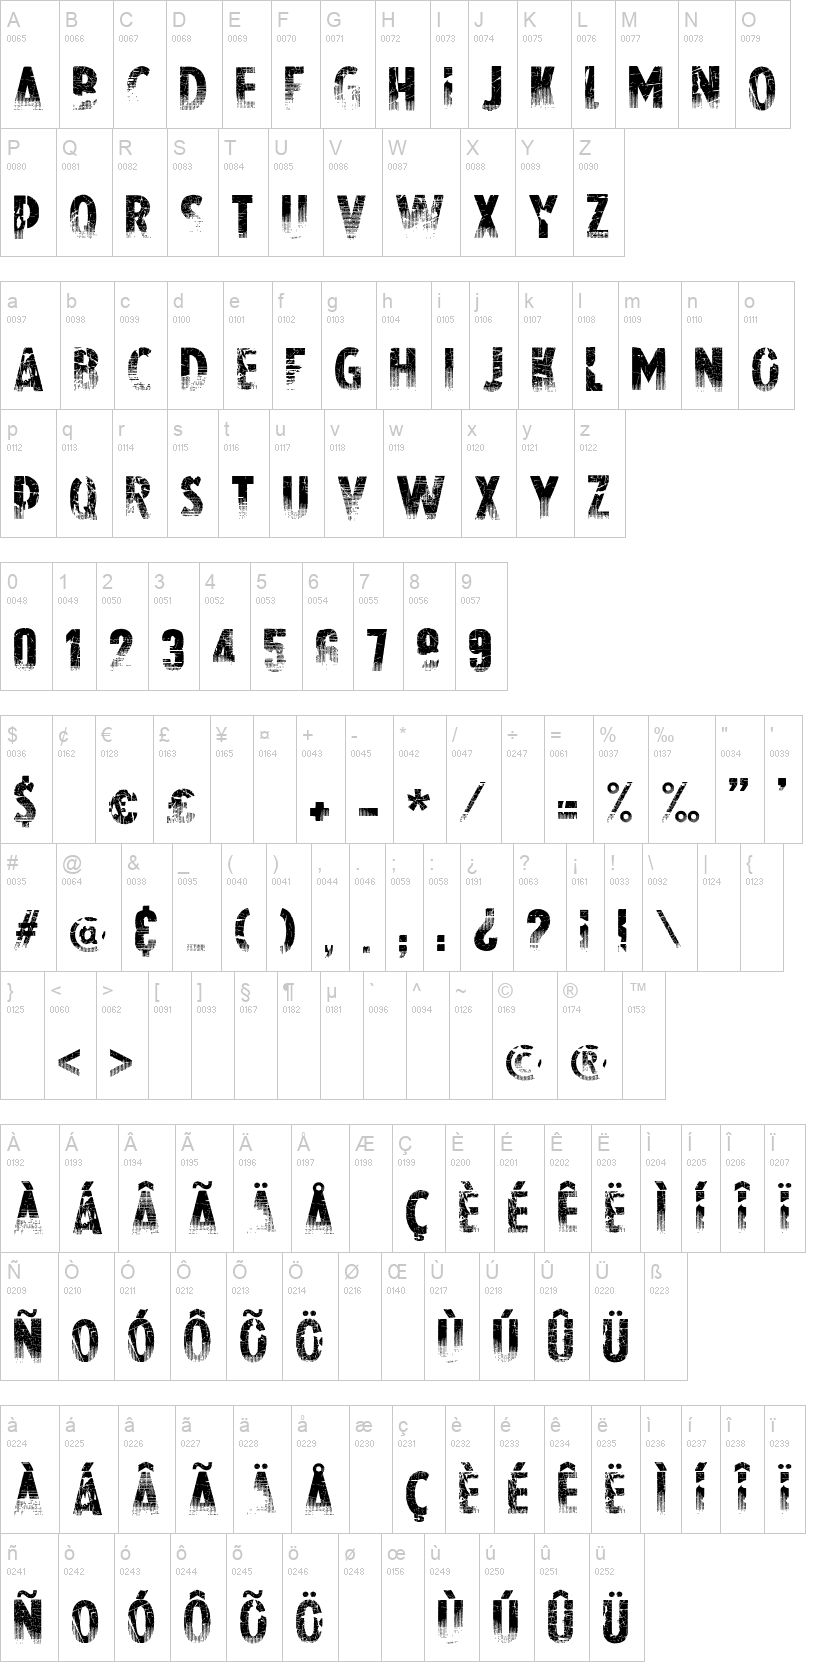 Dafont Free Fonts